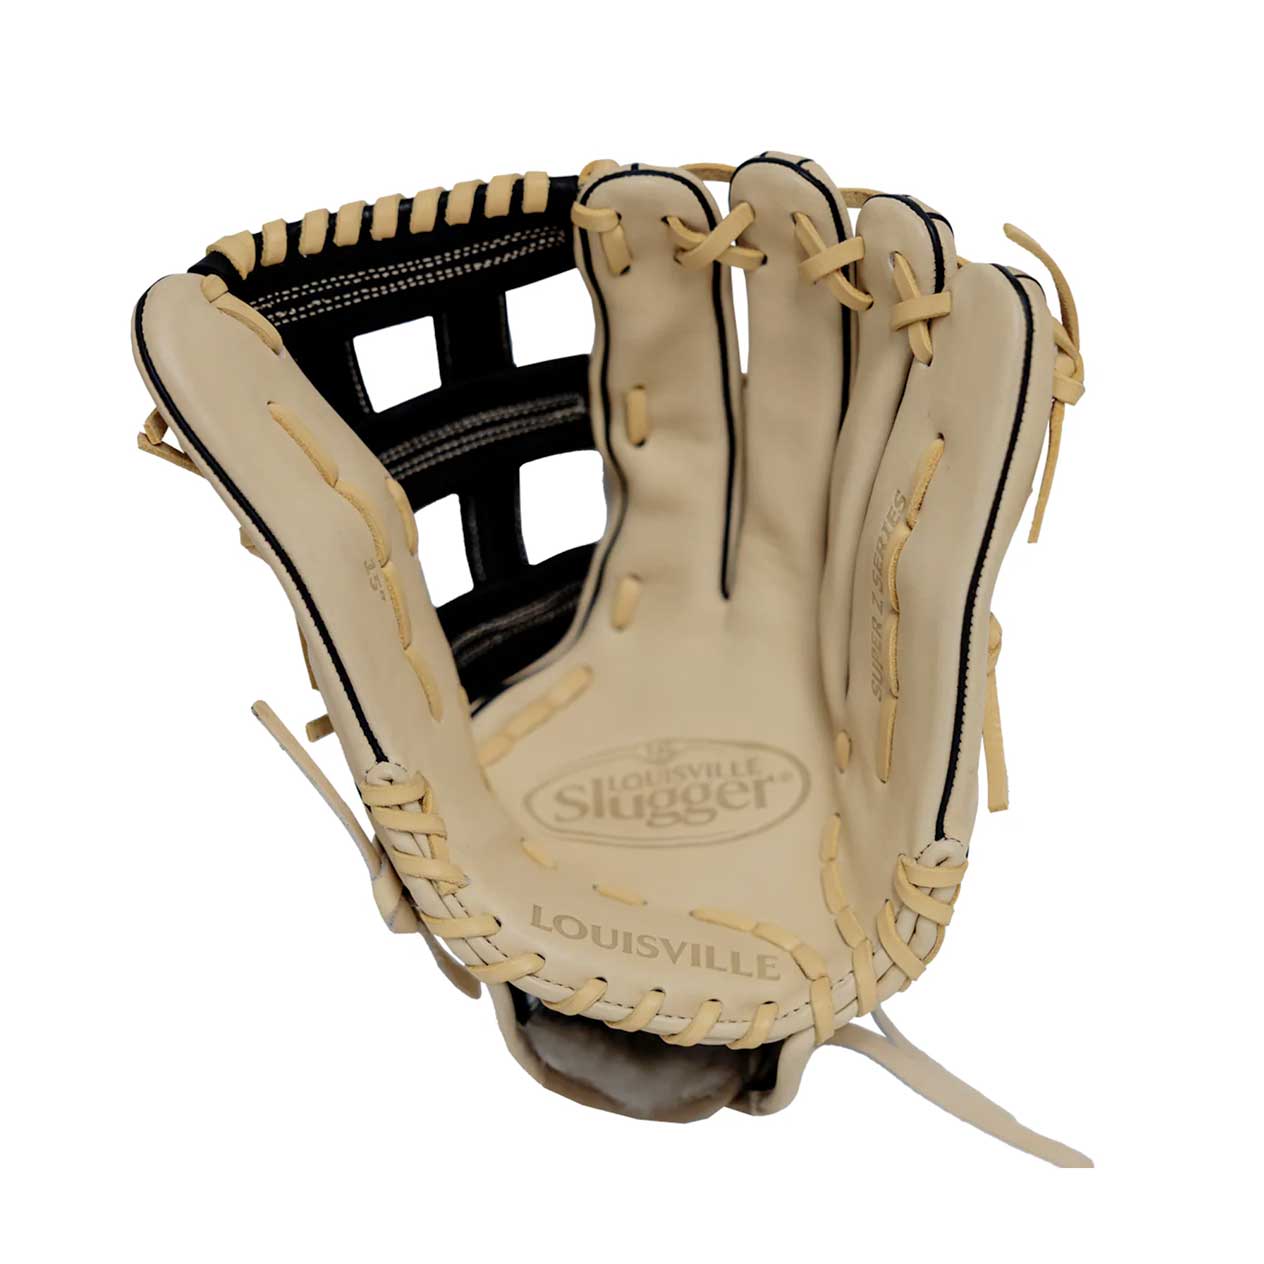 Louisville Super Z Slowpitch Fielding Glove Cream/Black/Gold 13.5"